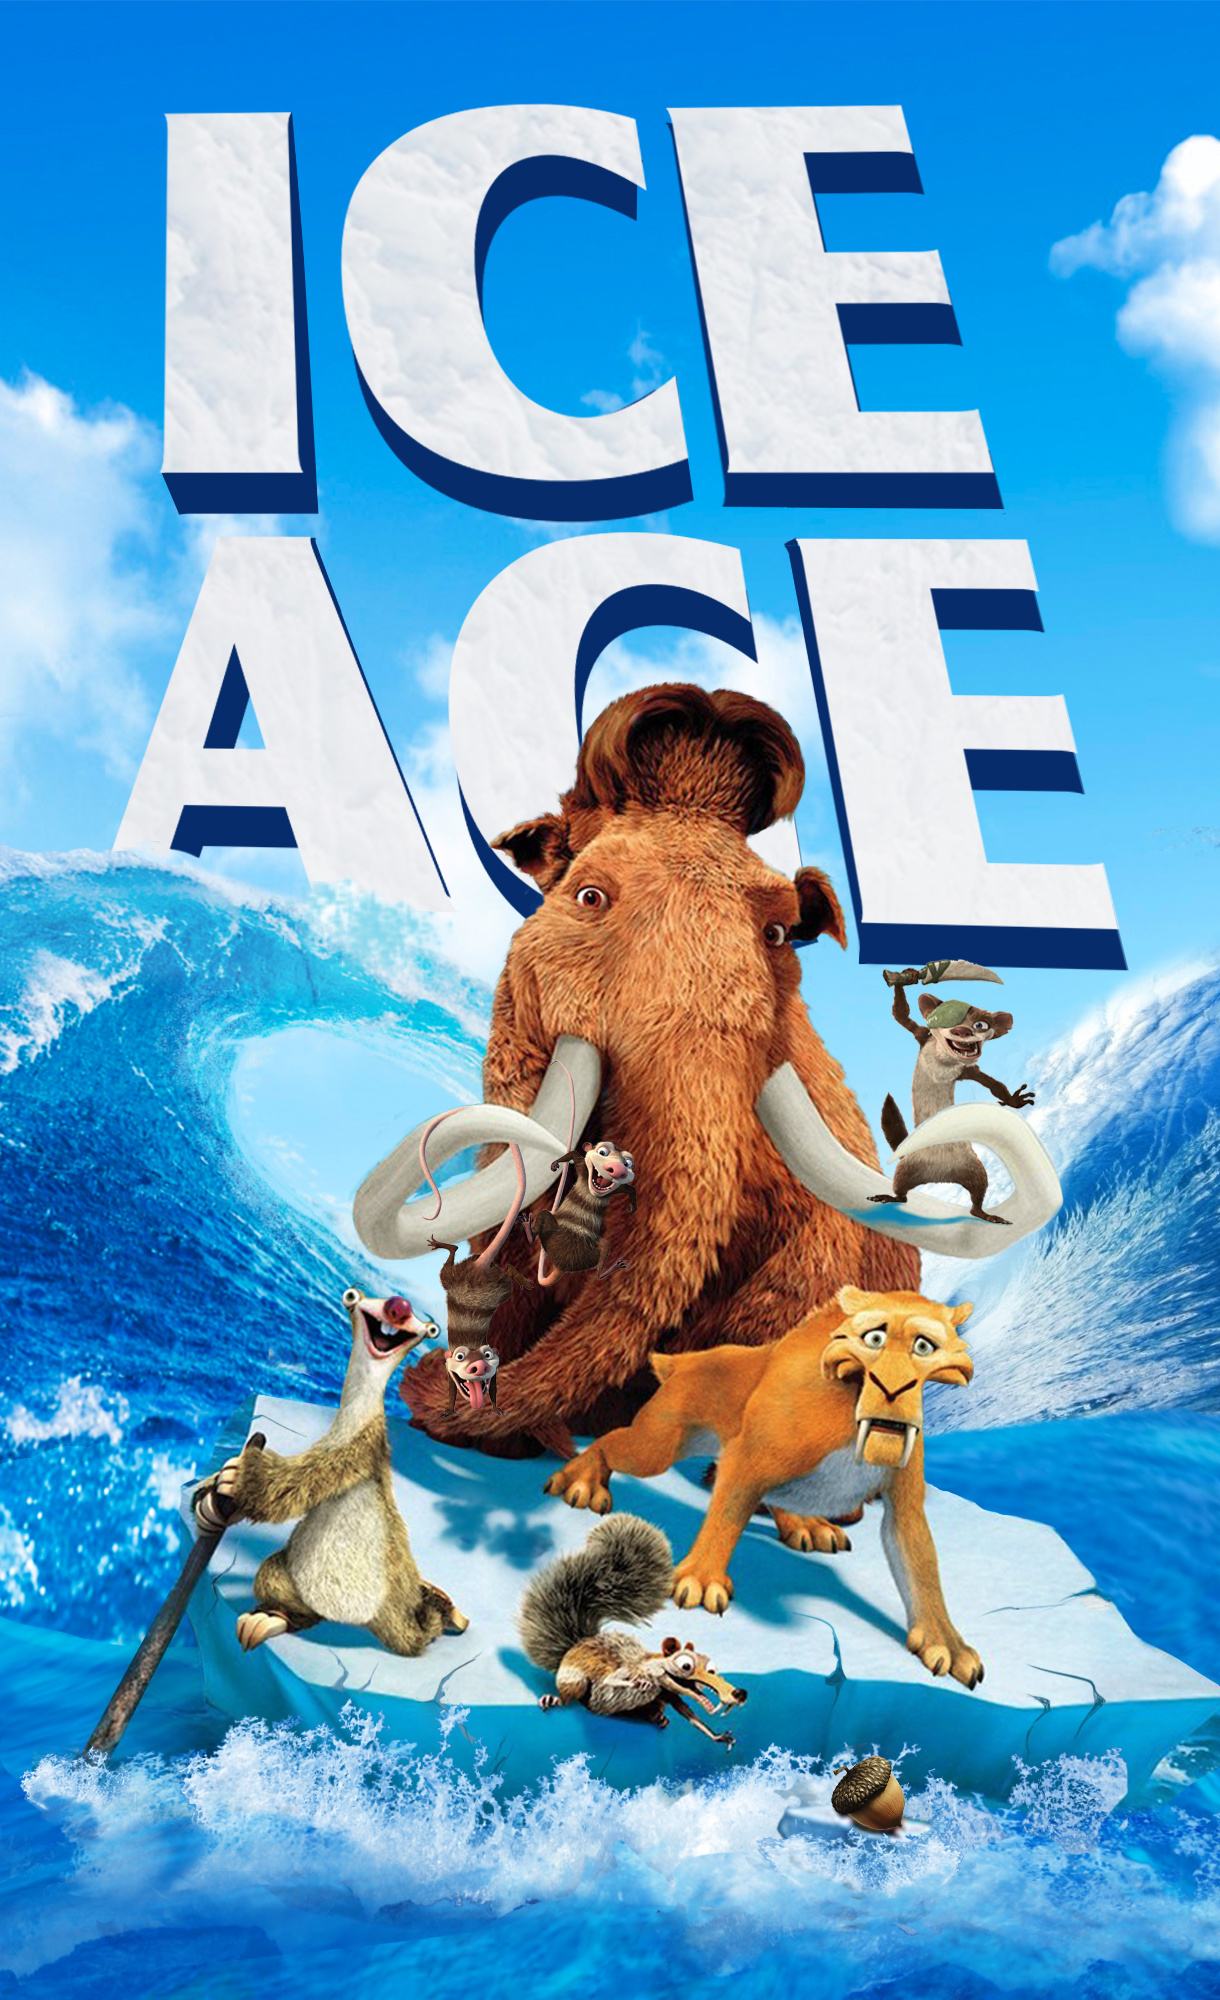 记得以前看电影《冰川时代》,印象最深的,除了性格鲜明的猛